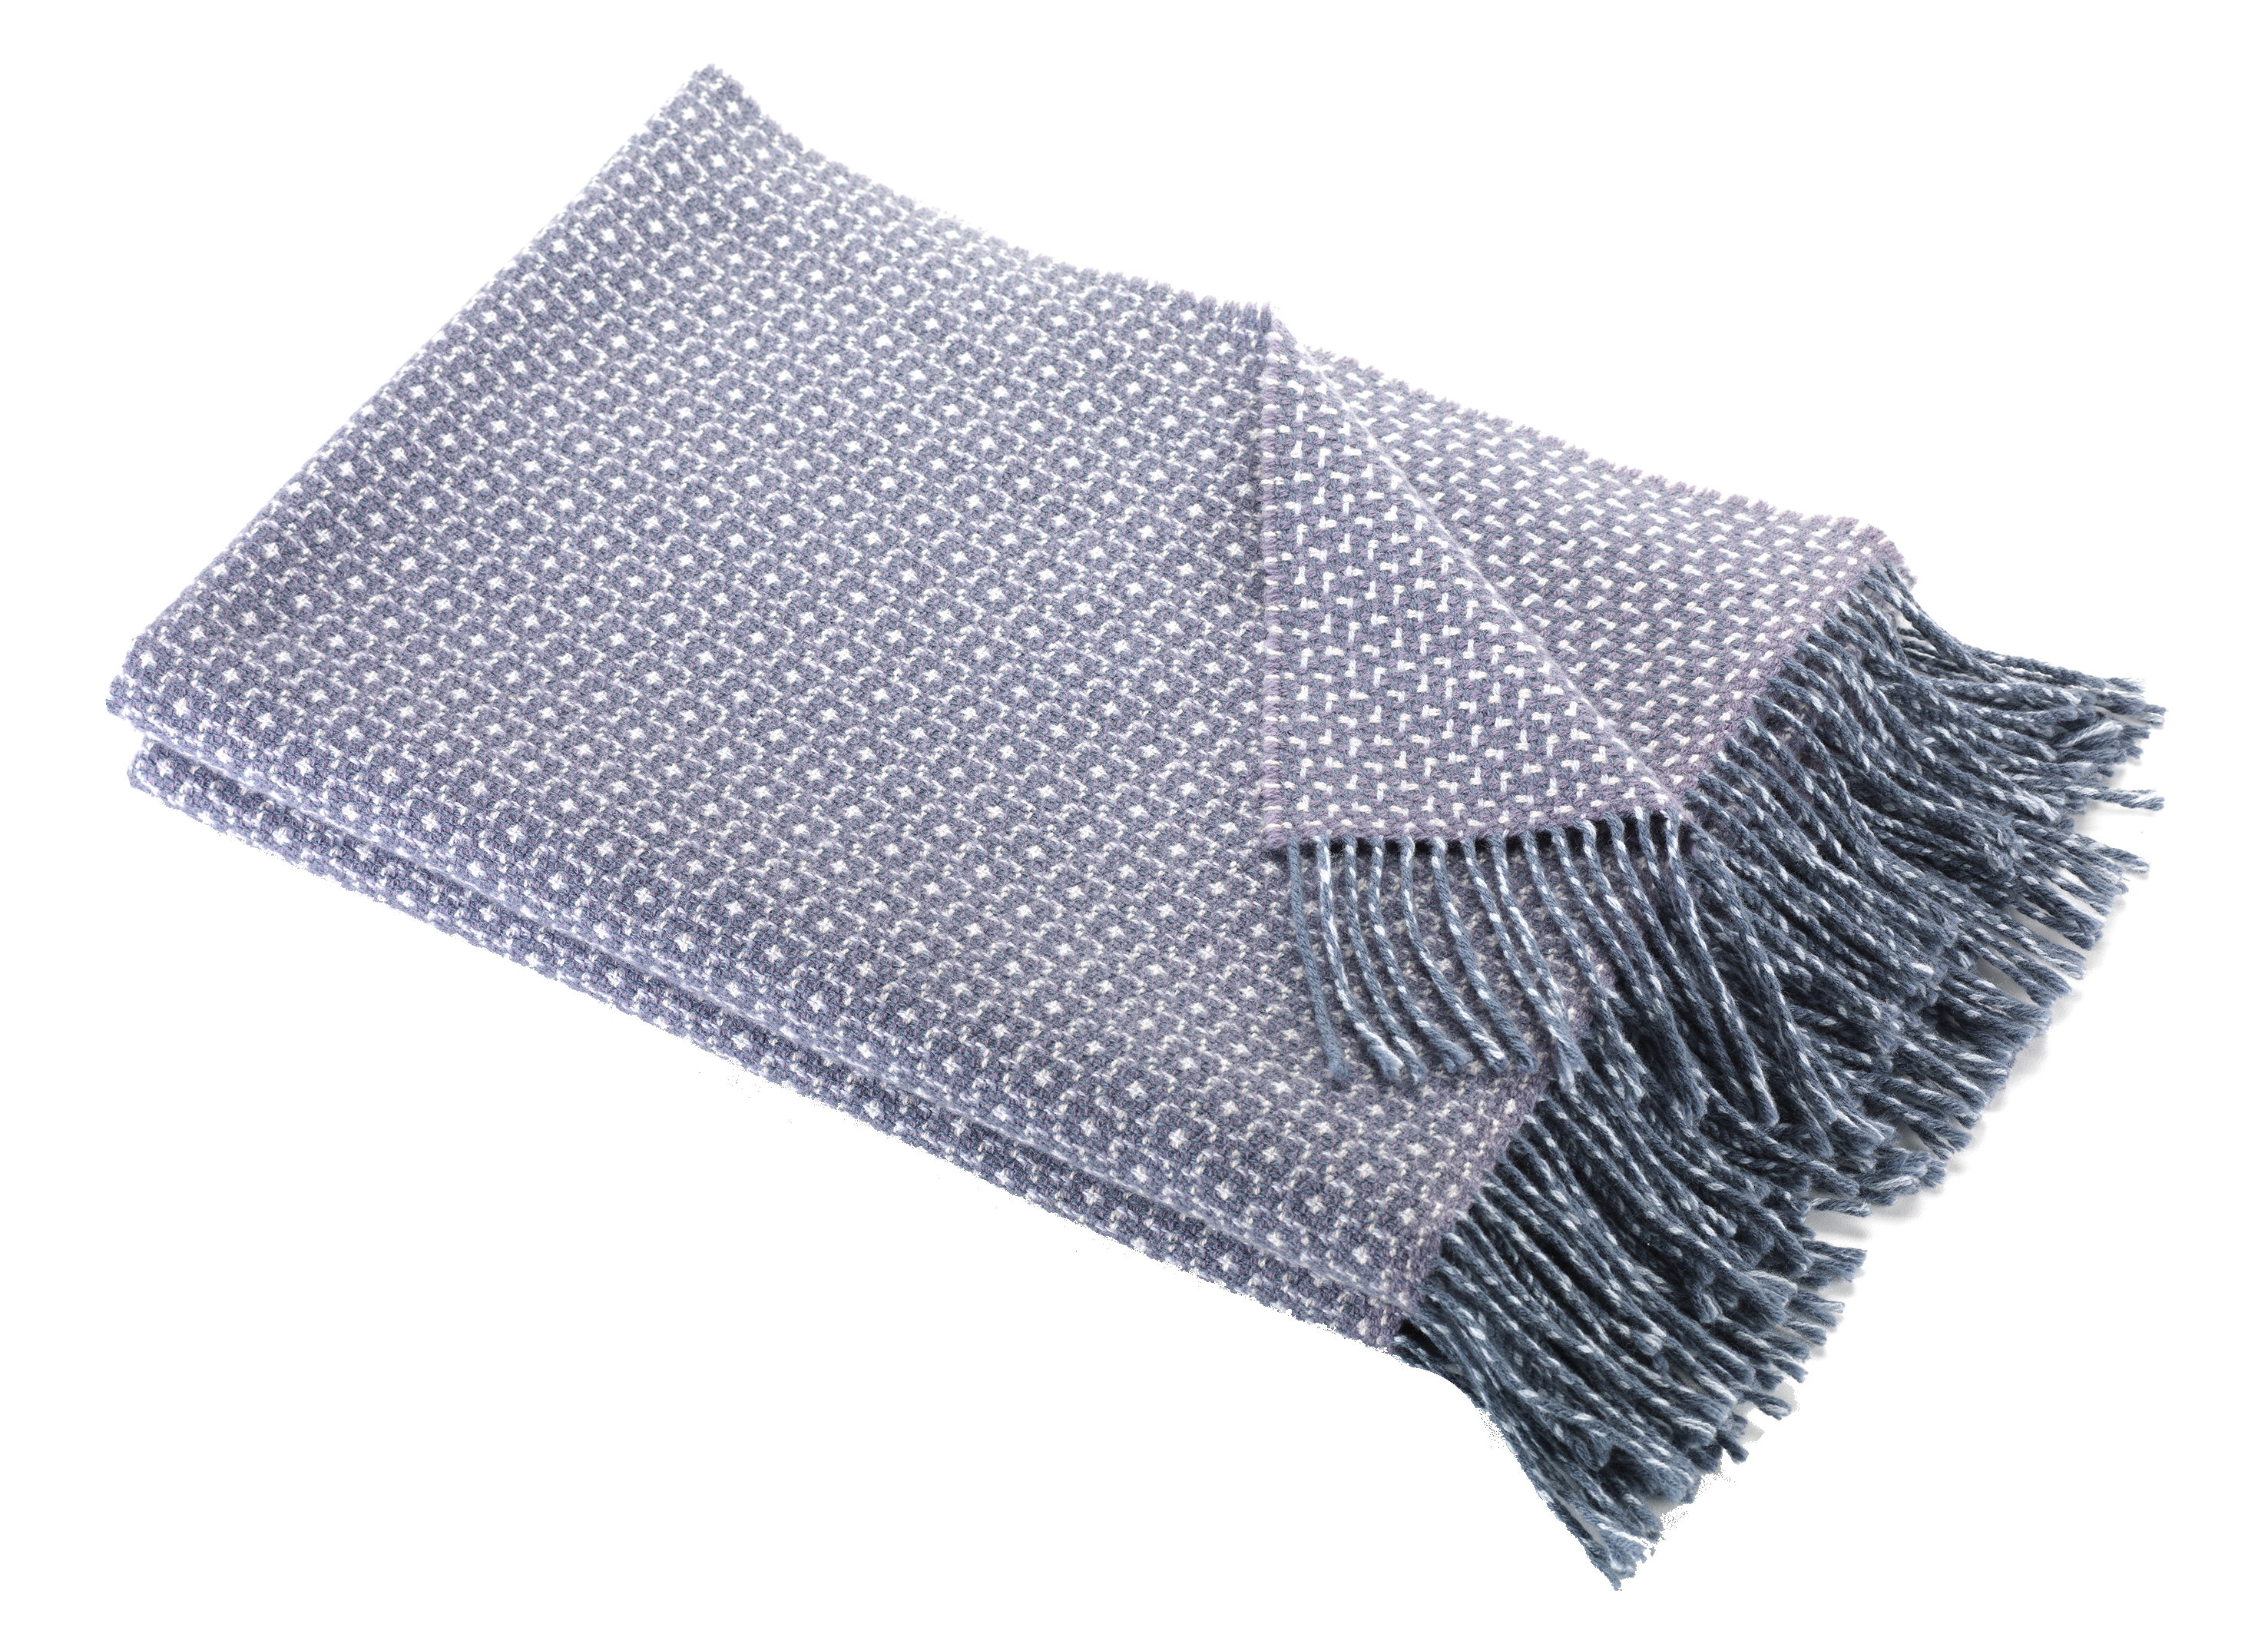 Heirloom Blanket by Warped Textiles